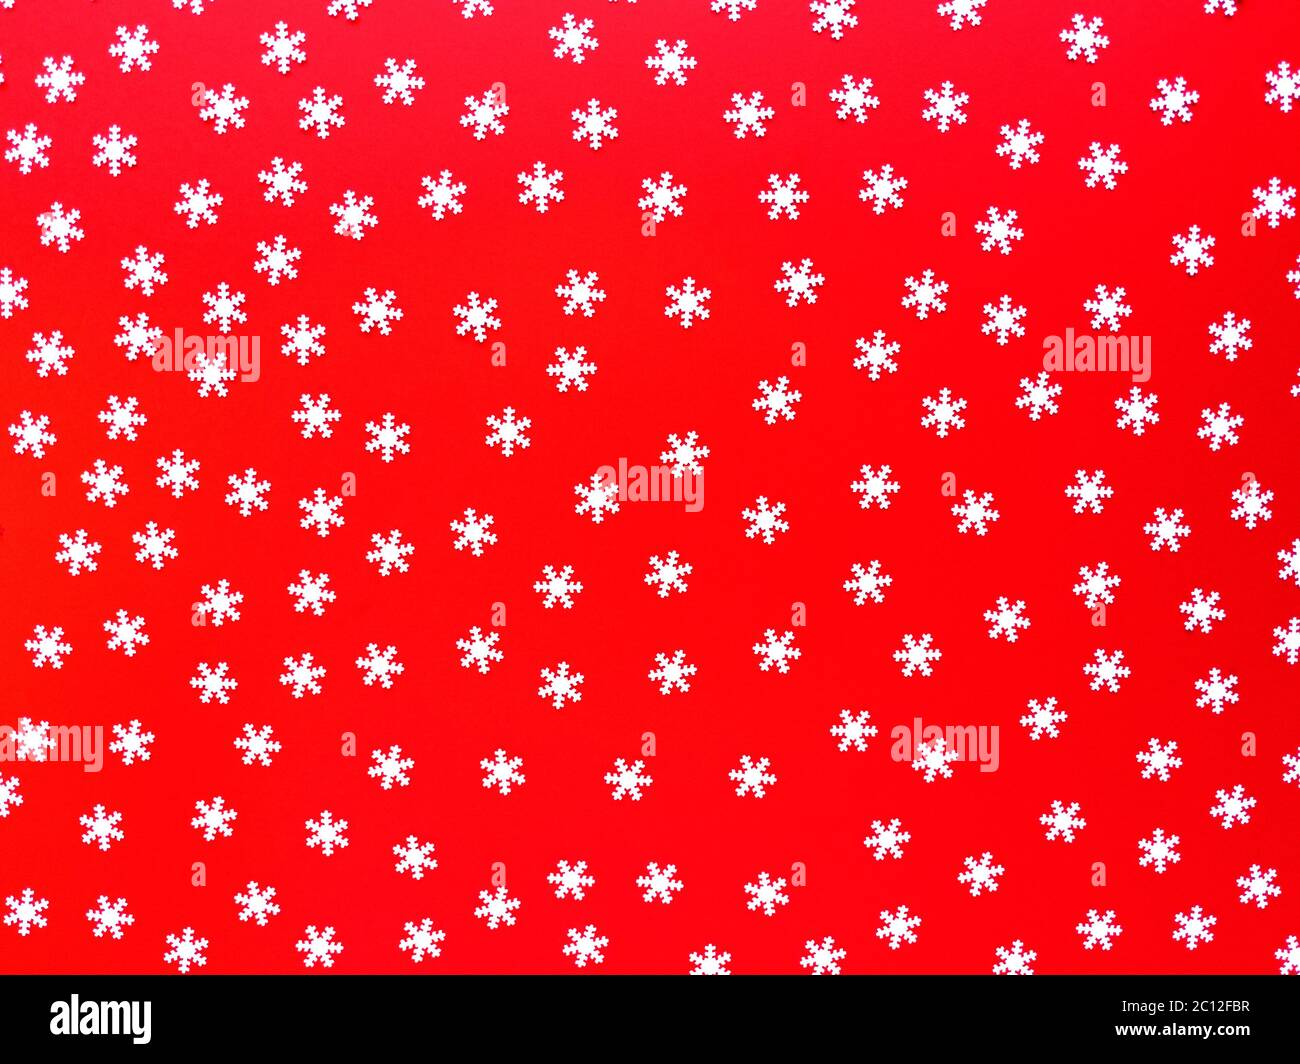 Verstreute weiße Schneeflocken auf rotem Hintergrund. Einfache festliche flache Laie. Stock Foto. Stockfoto